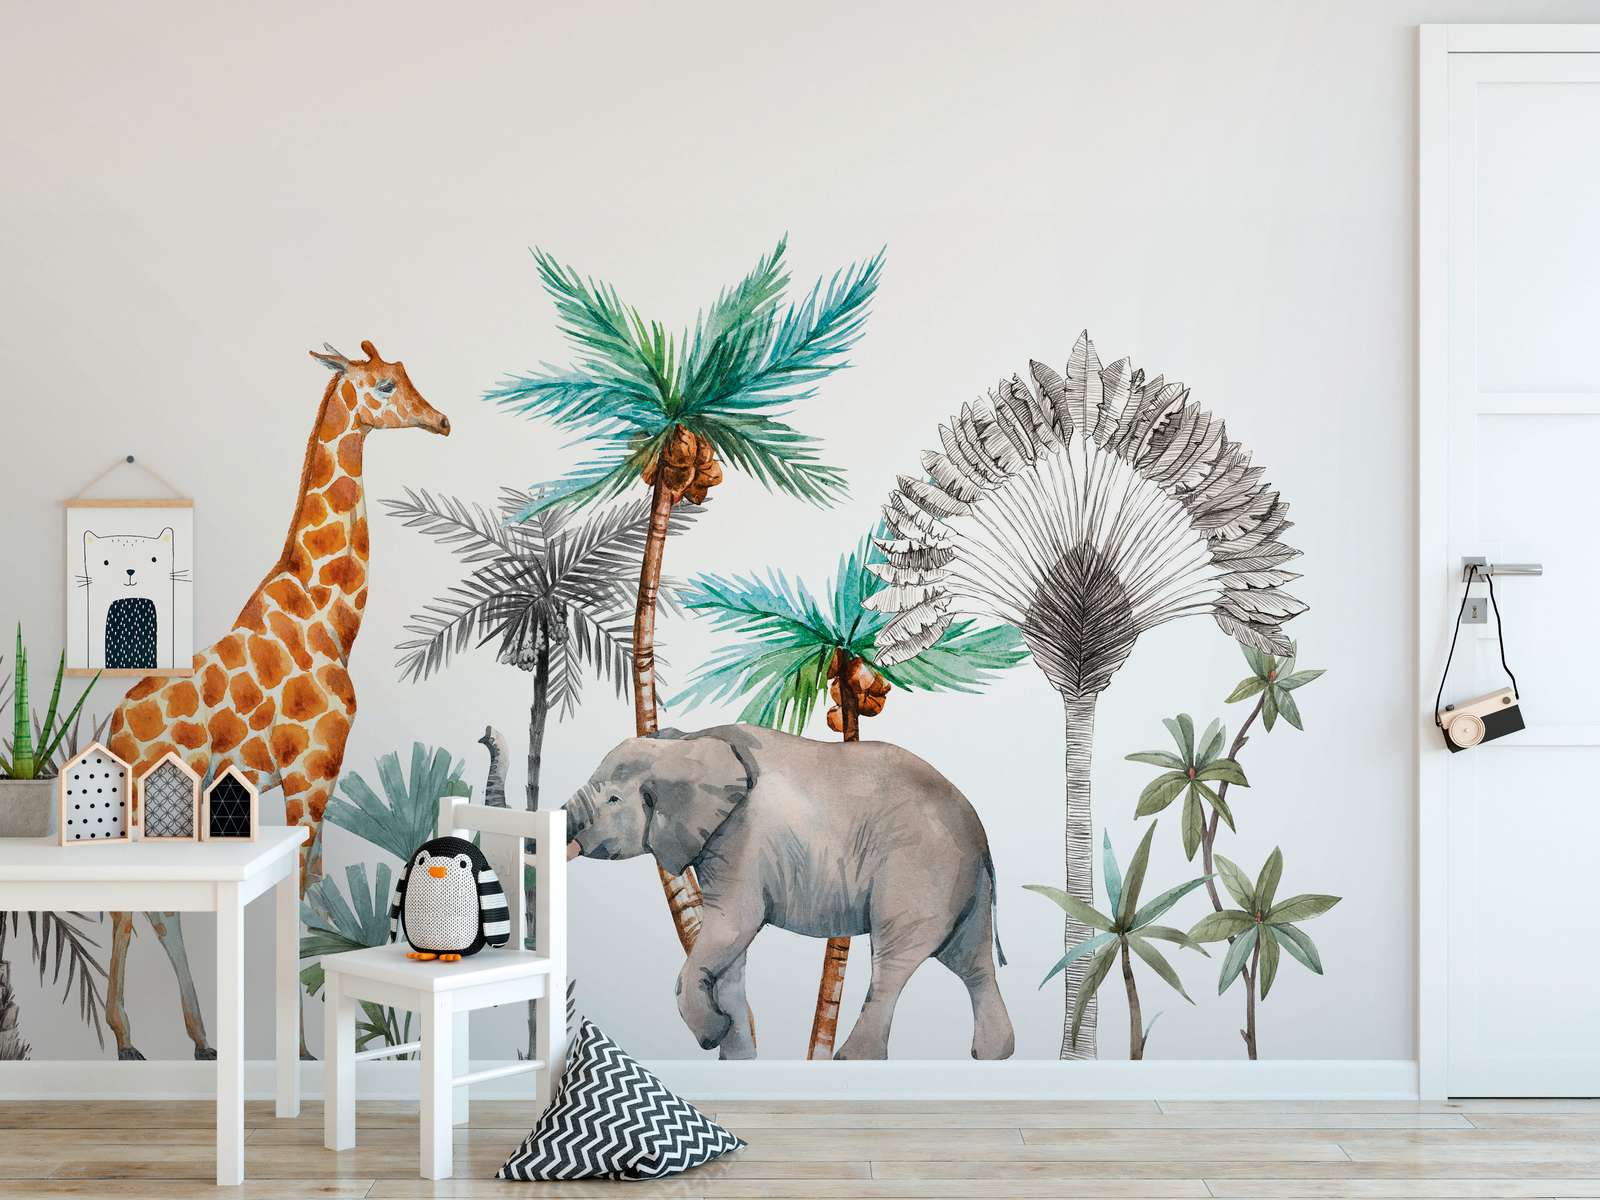             Papier peint panoramique pour chambre d'enfant avec animaux et arbres - blanc, vert, gris
        